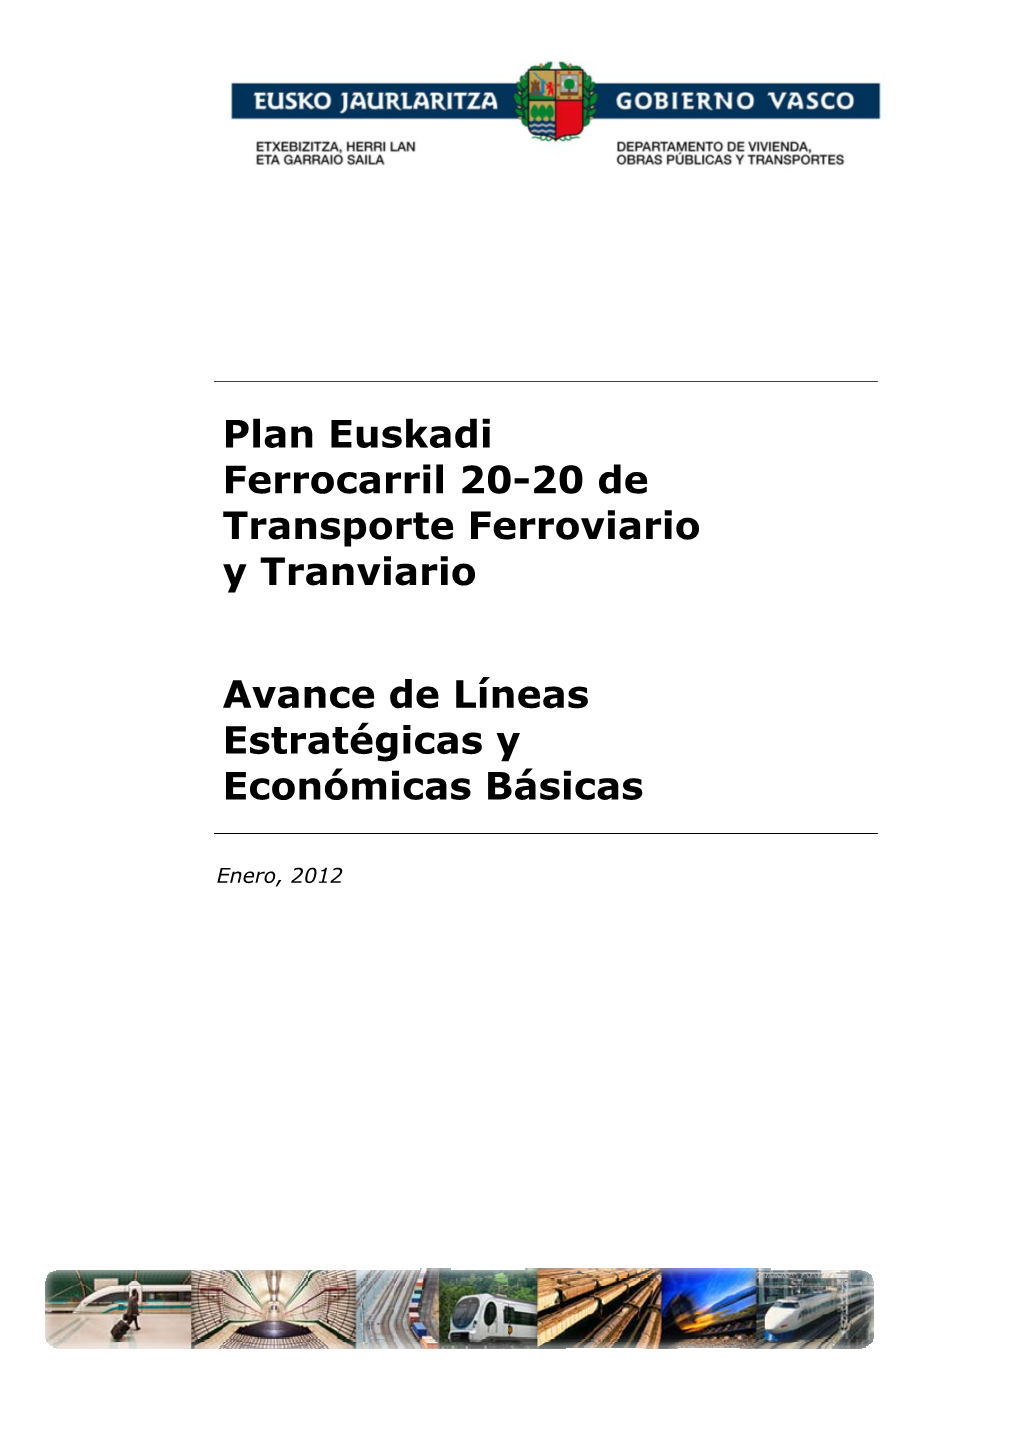 Plan Euskadi Ferrocarril 20-20 De Transporte Ferroviario Y Tranviario